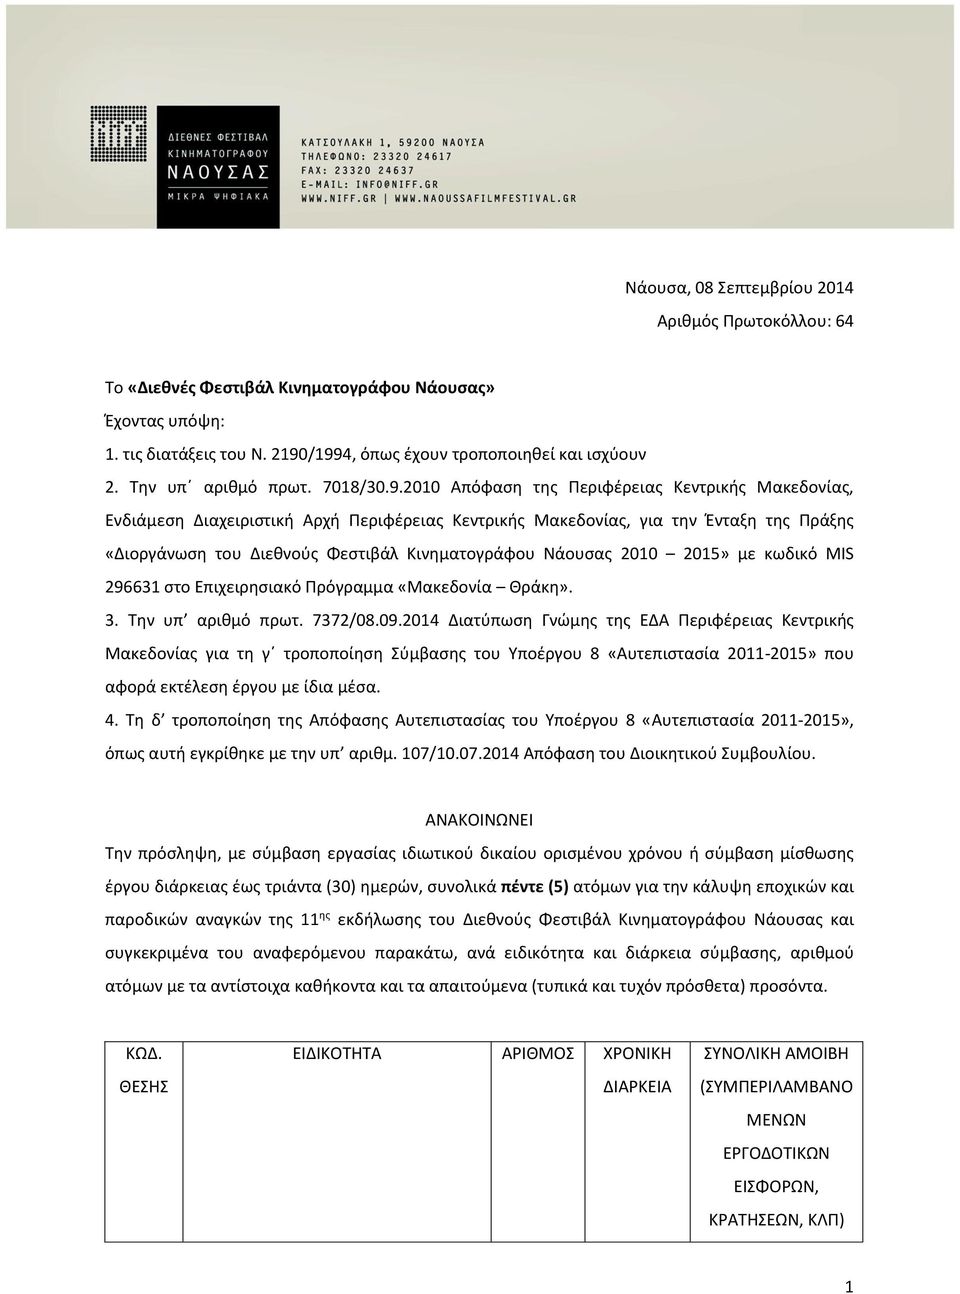 2010 Απόφαση της Περιφέρειας Κεντρικής Μακεδονίας, Ενδιάμεση Διαχειριστική Αρχή Περιφέρειας Κεντρικής Μακεδονίας, για την Ένταξη της Πράξης «Διοργάνωση του Διεθνούς Φεστιβάλ Κινηματογράφου Νάουσας